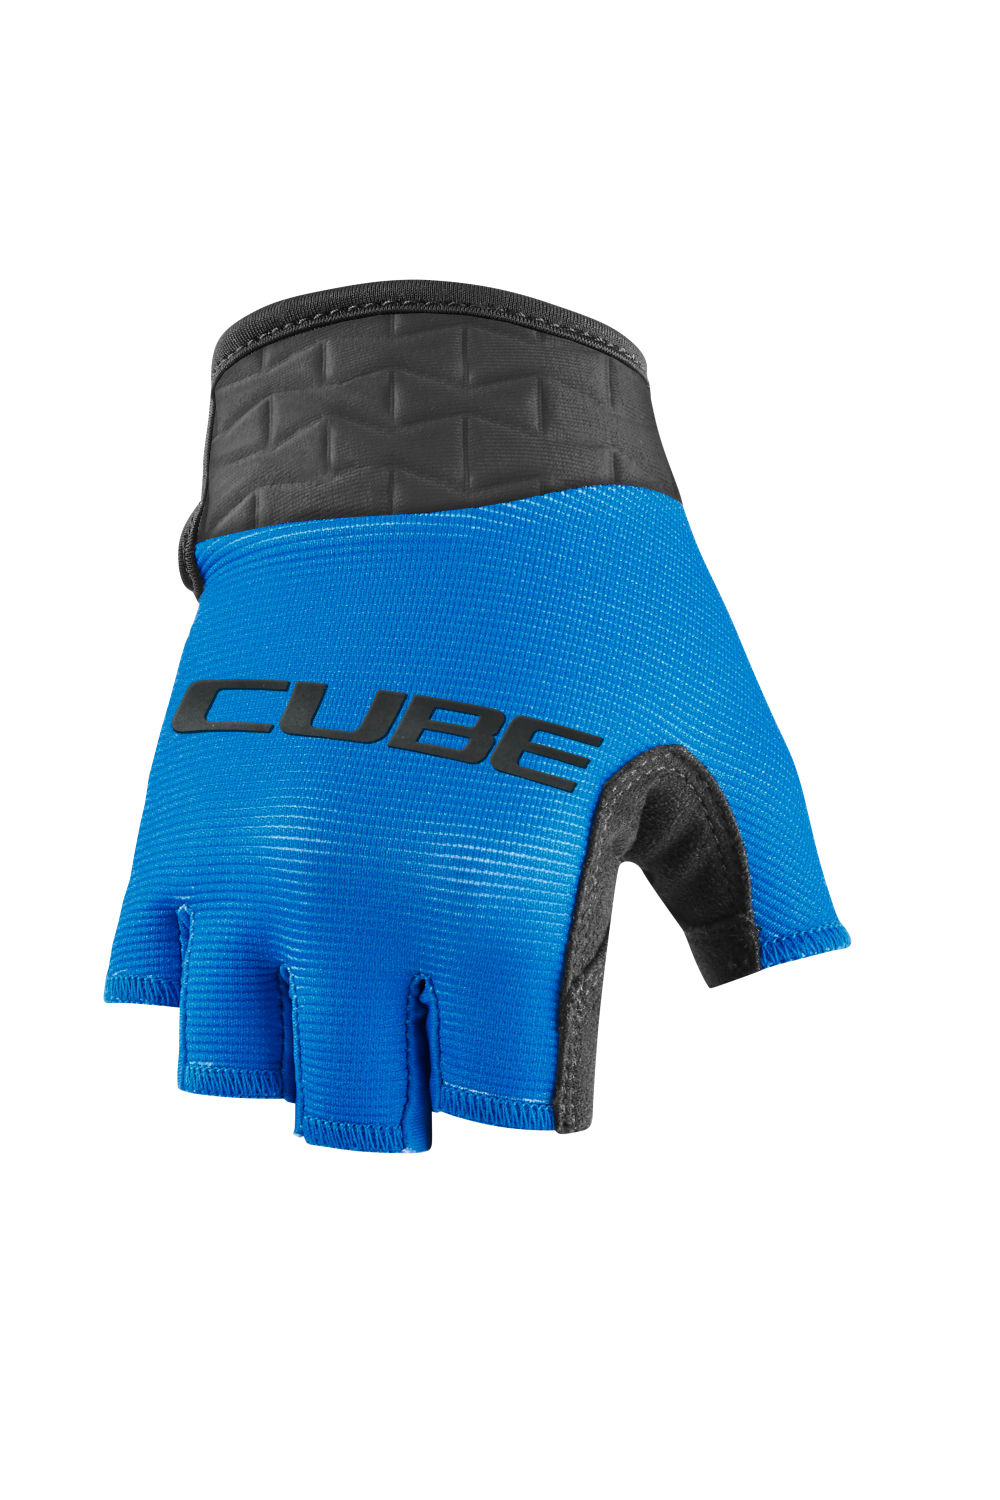 munt trolleybus Ik heb een contract gemaakt Cube Performance handschoenen kopen? | Cube Kinderkleding